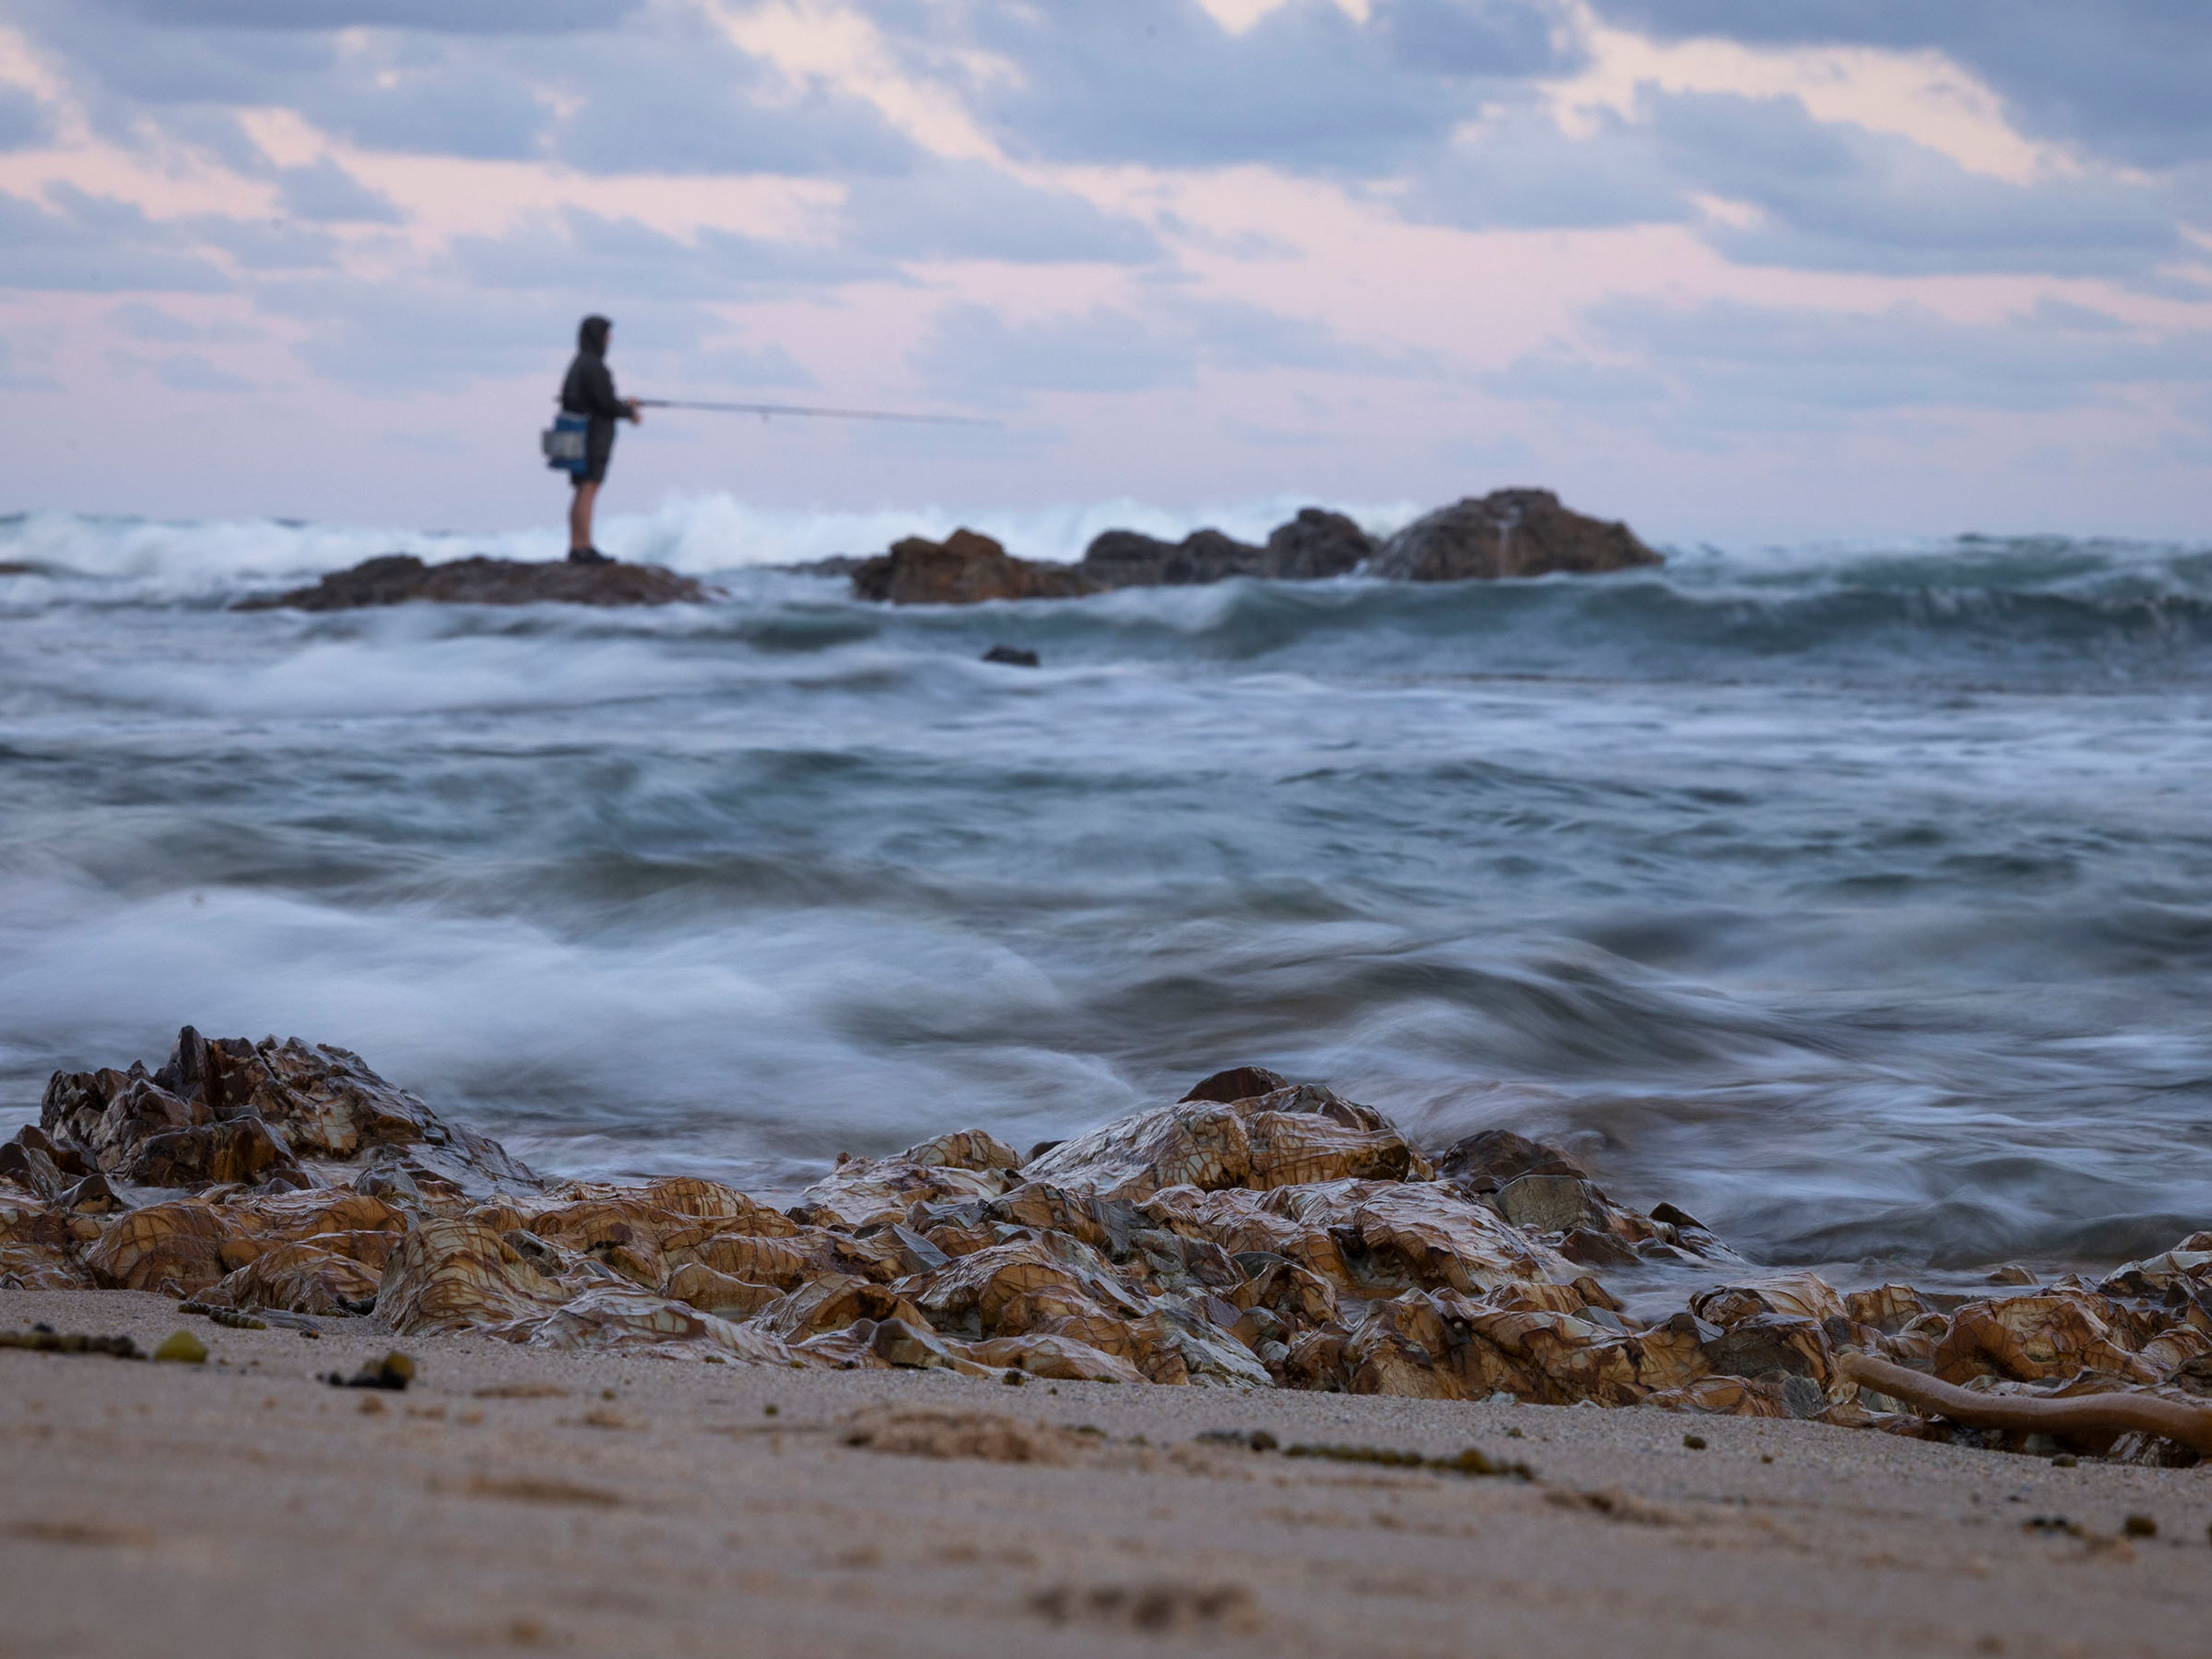 Rock fishing at Corndi Beach